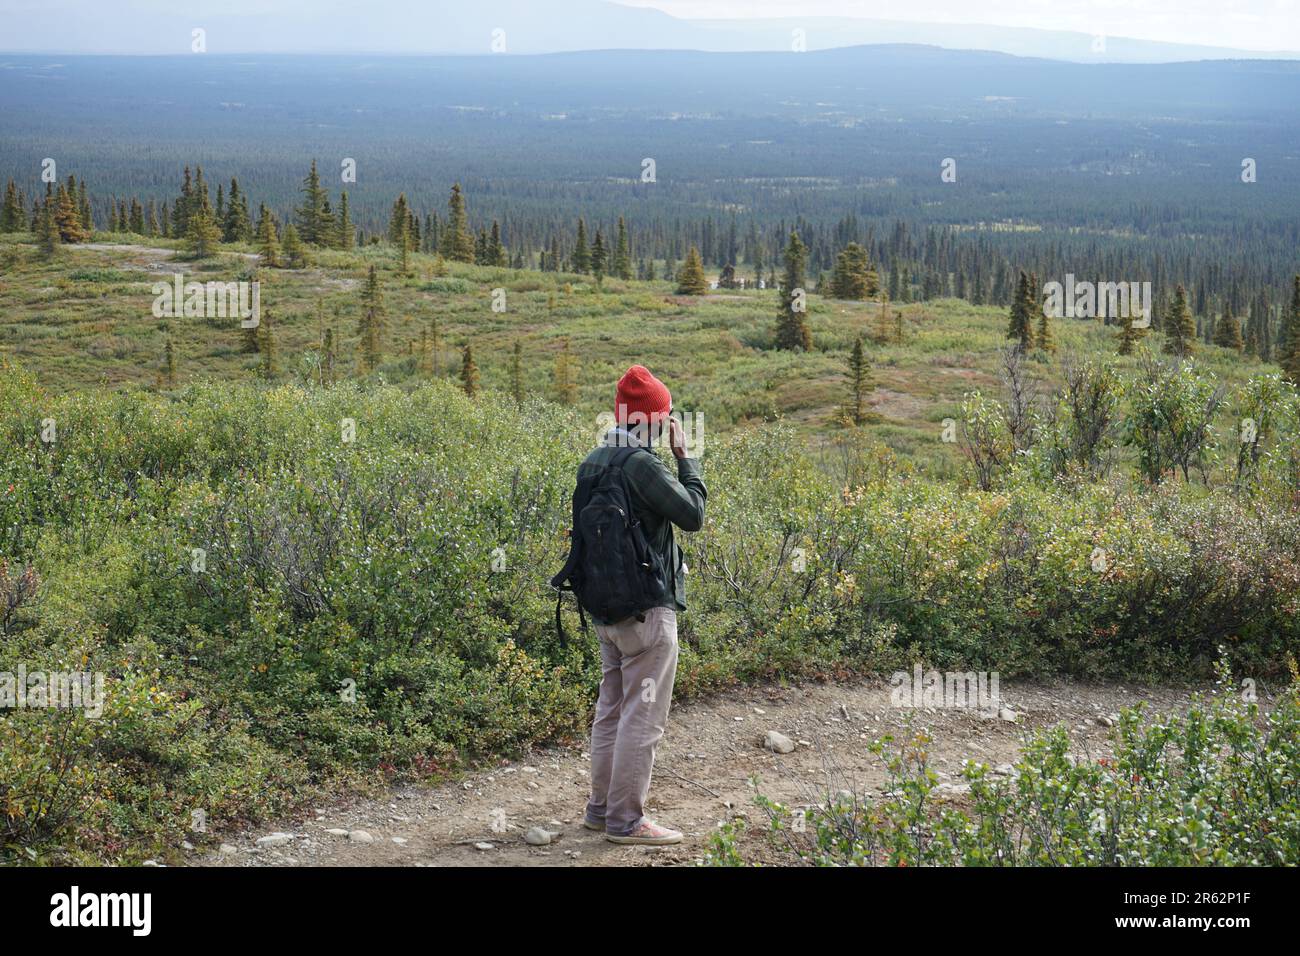 Ein Mann, der auf dem schmalen Pfad steht und die malerische Aussicht auf das riesige grüne Land und die ewigen Berge im fernen Hintergrund betrachtet. Denken ist der Weg. Stockfoto